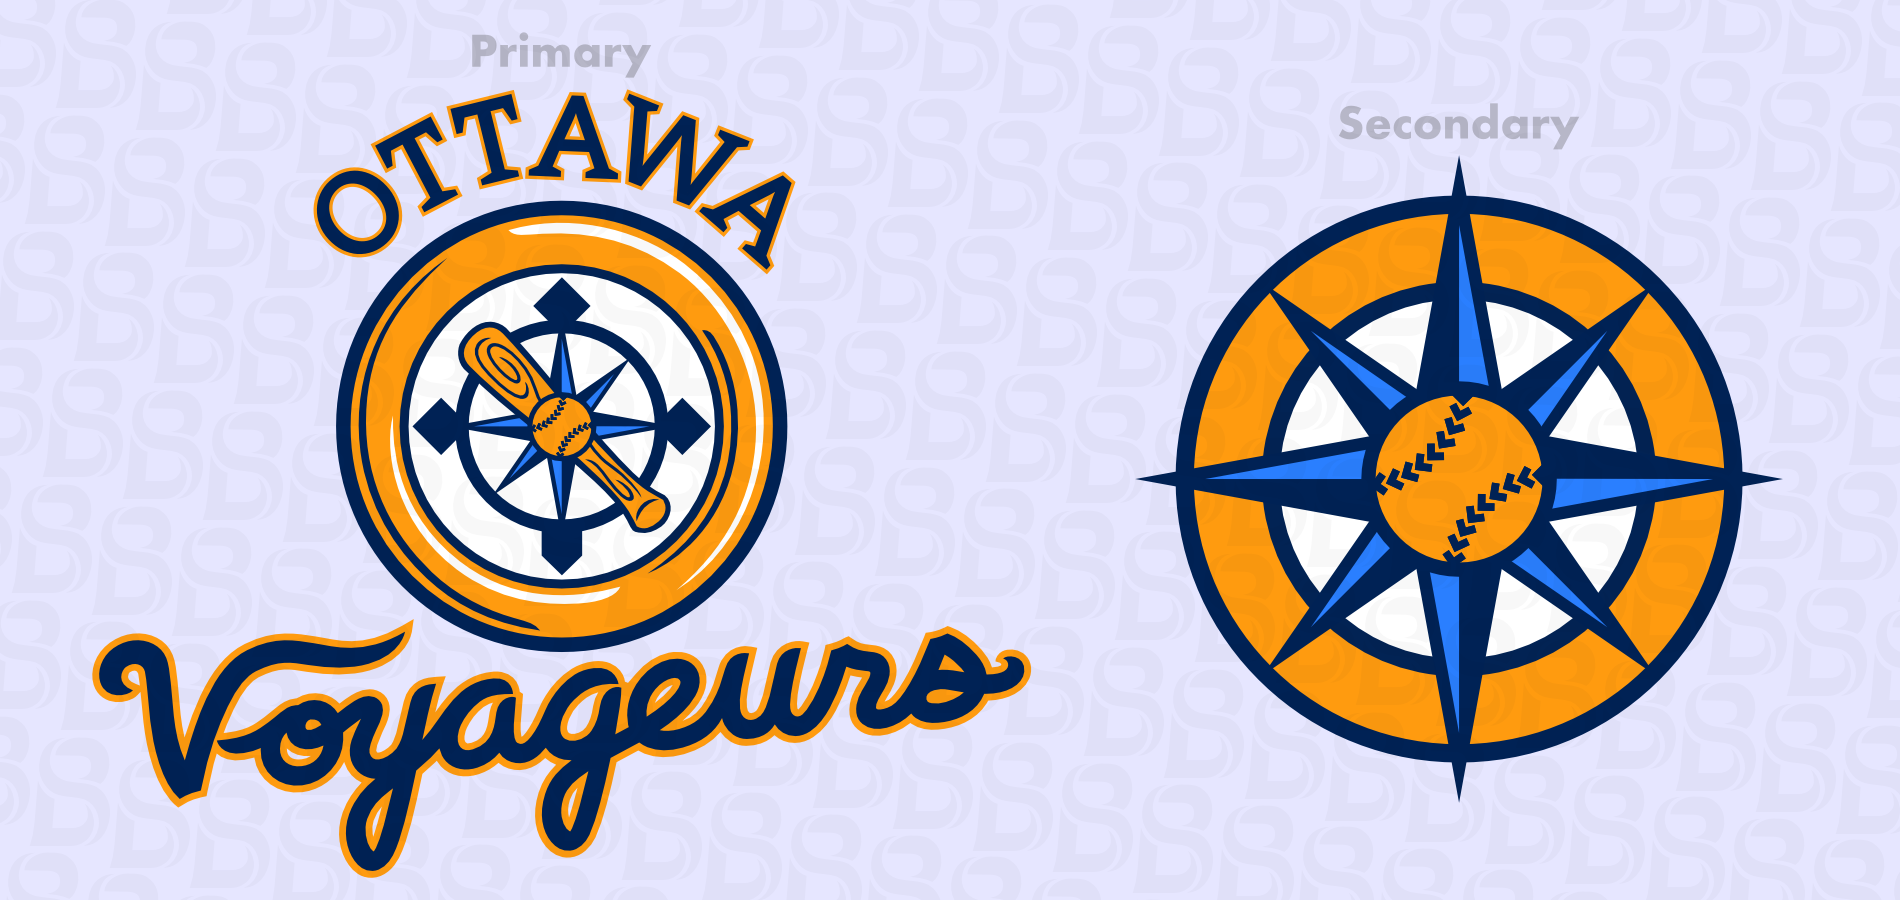 Ottawa-Voyageurs-logos-2.png